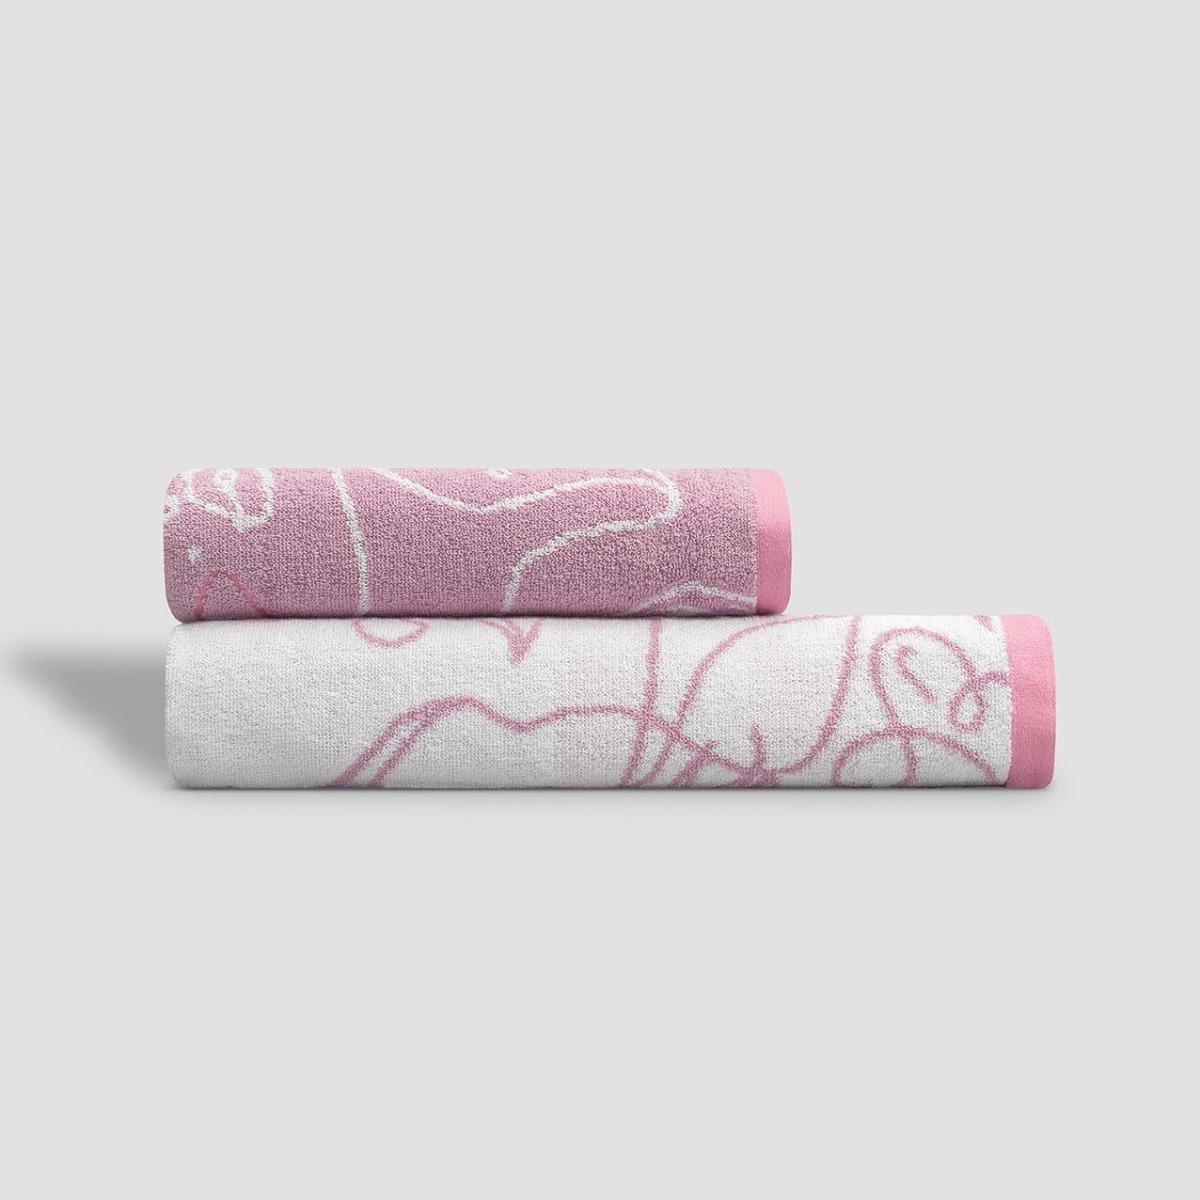 Полотенце Kids by Togas Кэрри белое с розовым 70х140 см белое полотенце спанлейс эконом 45 90 см